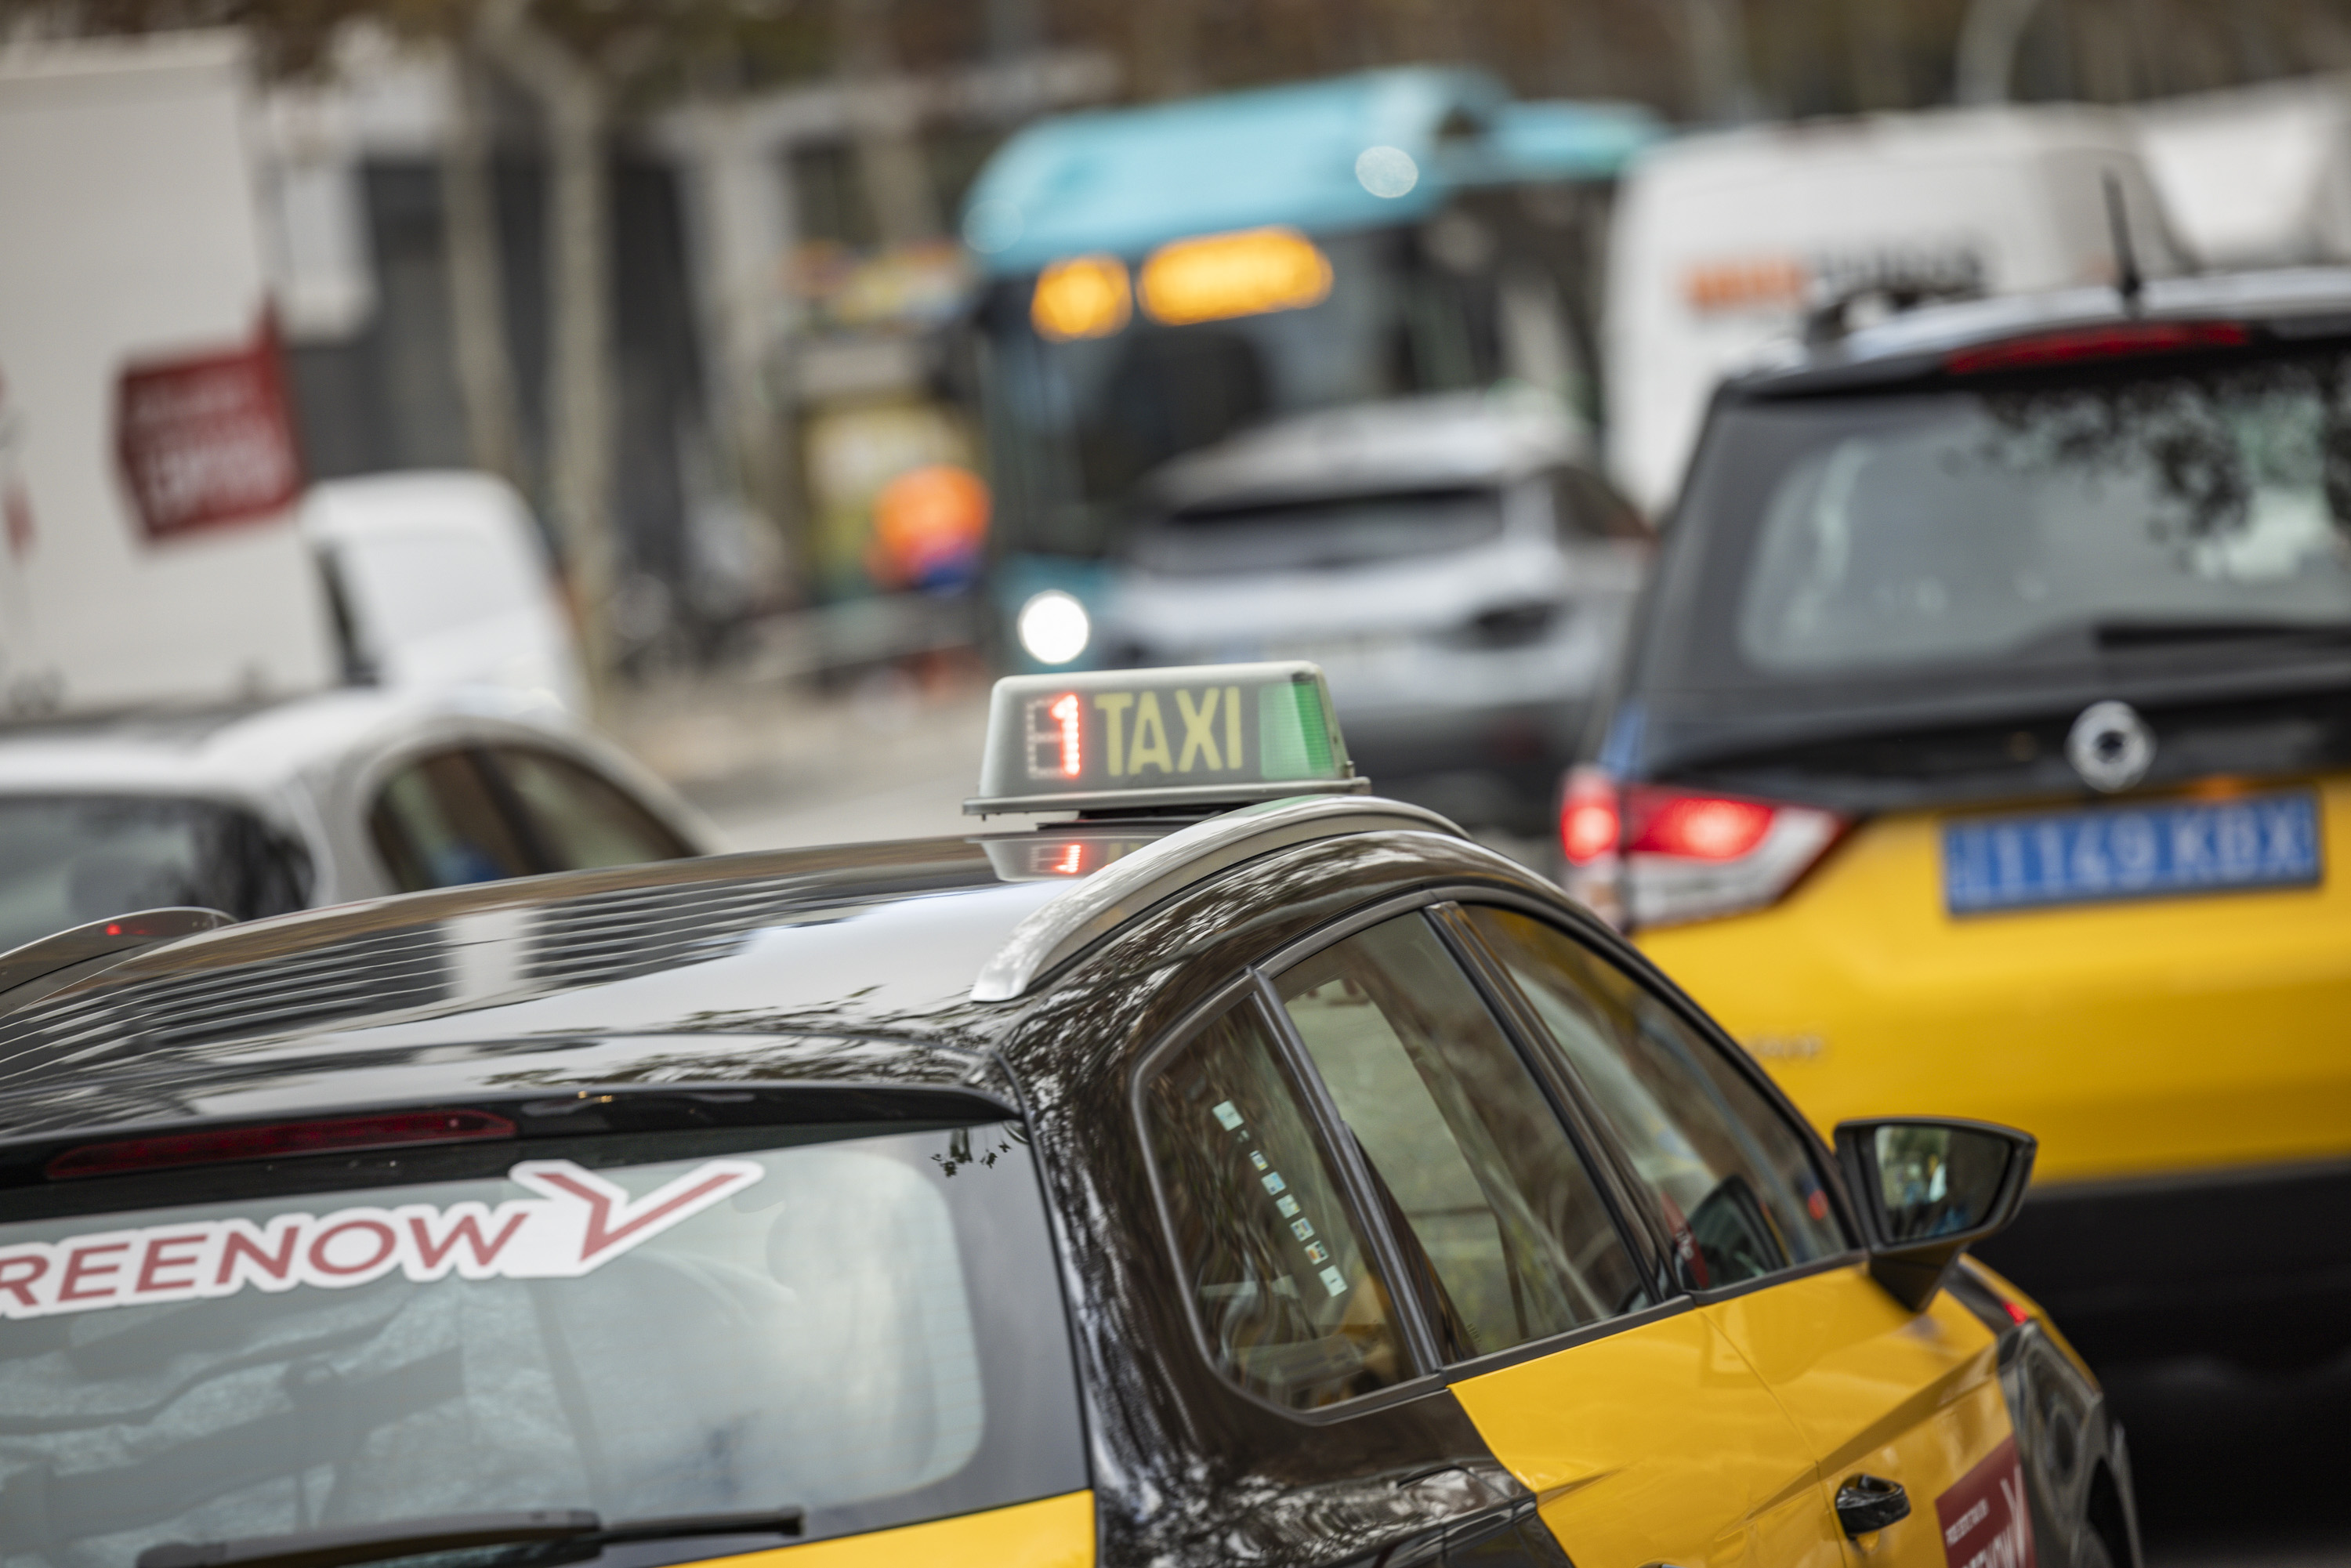 Élite Taxi aixeca l'amenaça de boicotejar el MWC després d'arribar a un acord